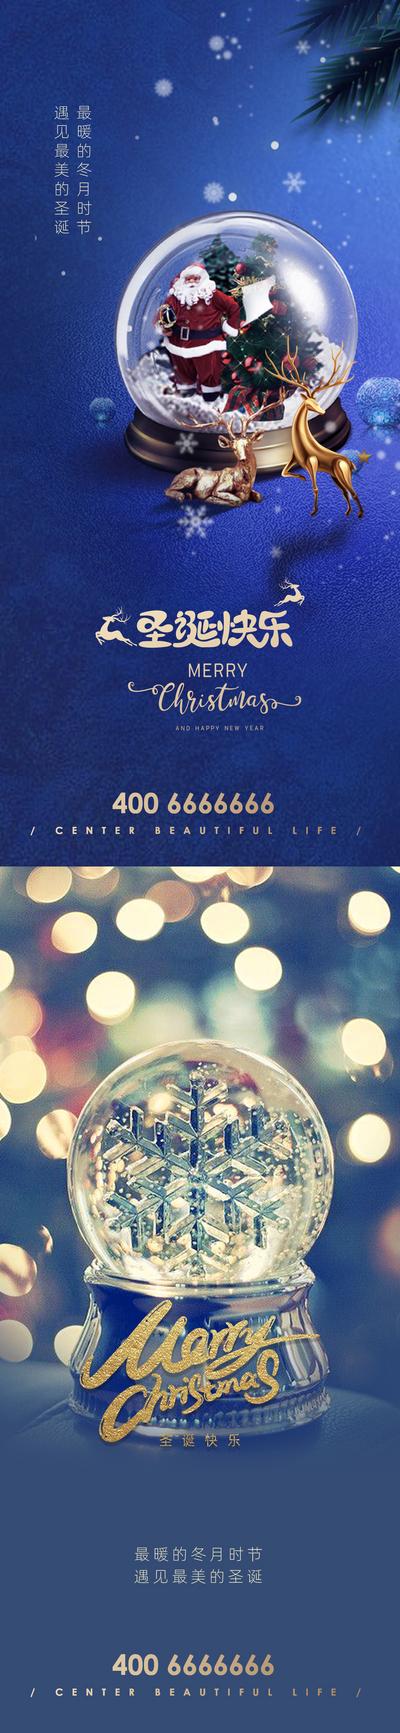 【南门网】海报 公历节日 圣诞节 平安夜 水晶球 麋鹿 圣诞树 雪花